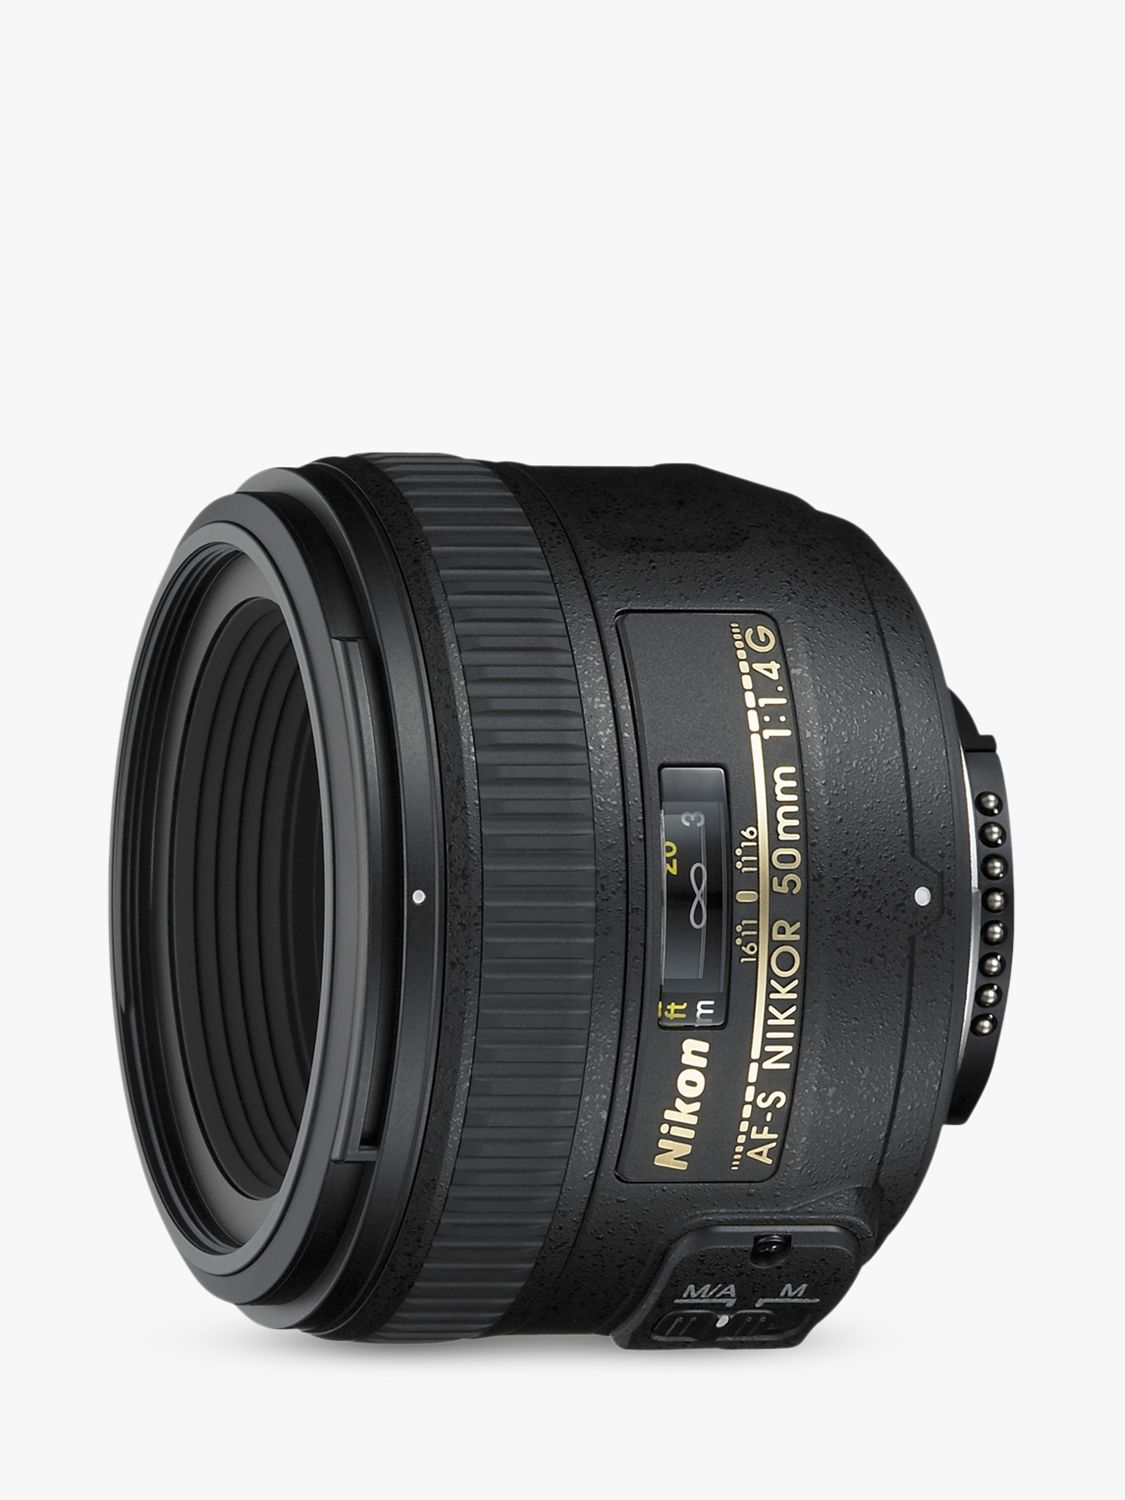 Image of Nikon 50mm f14G AFS Standard Lens